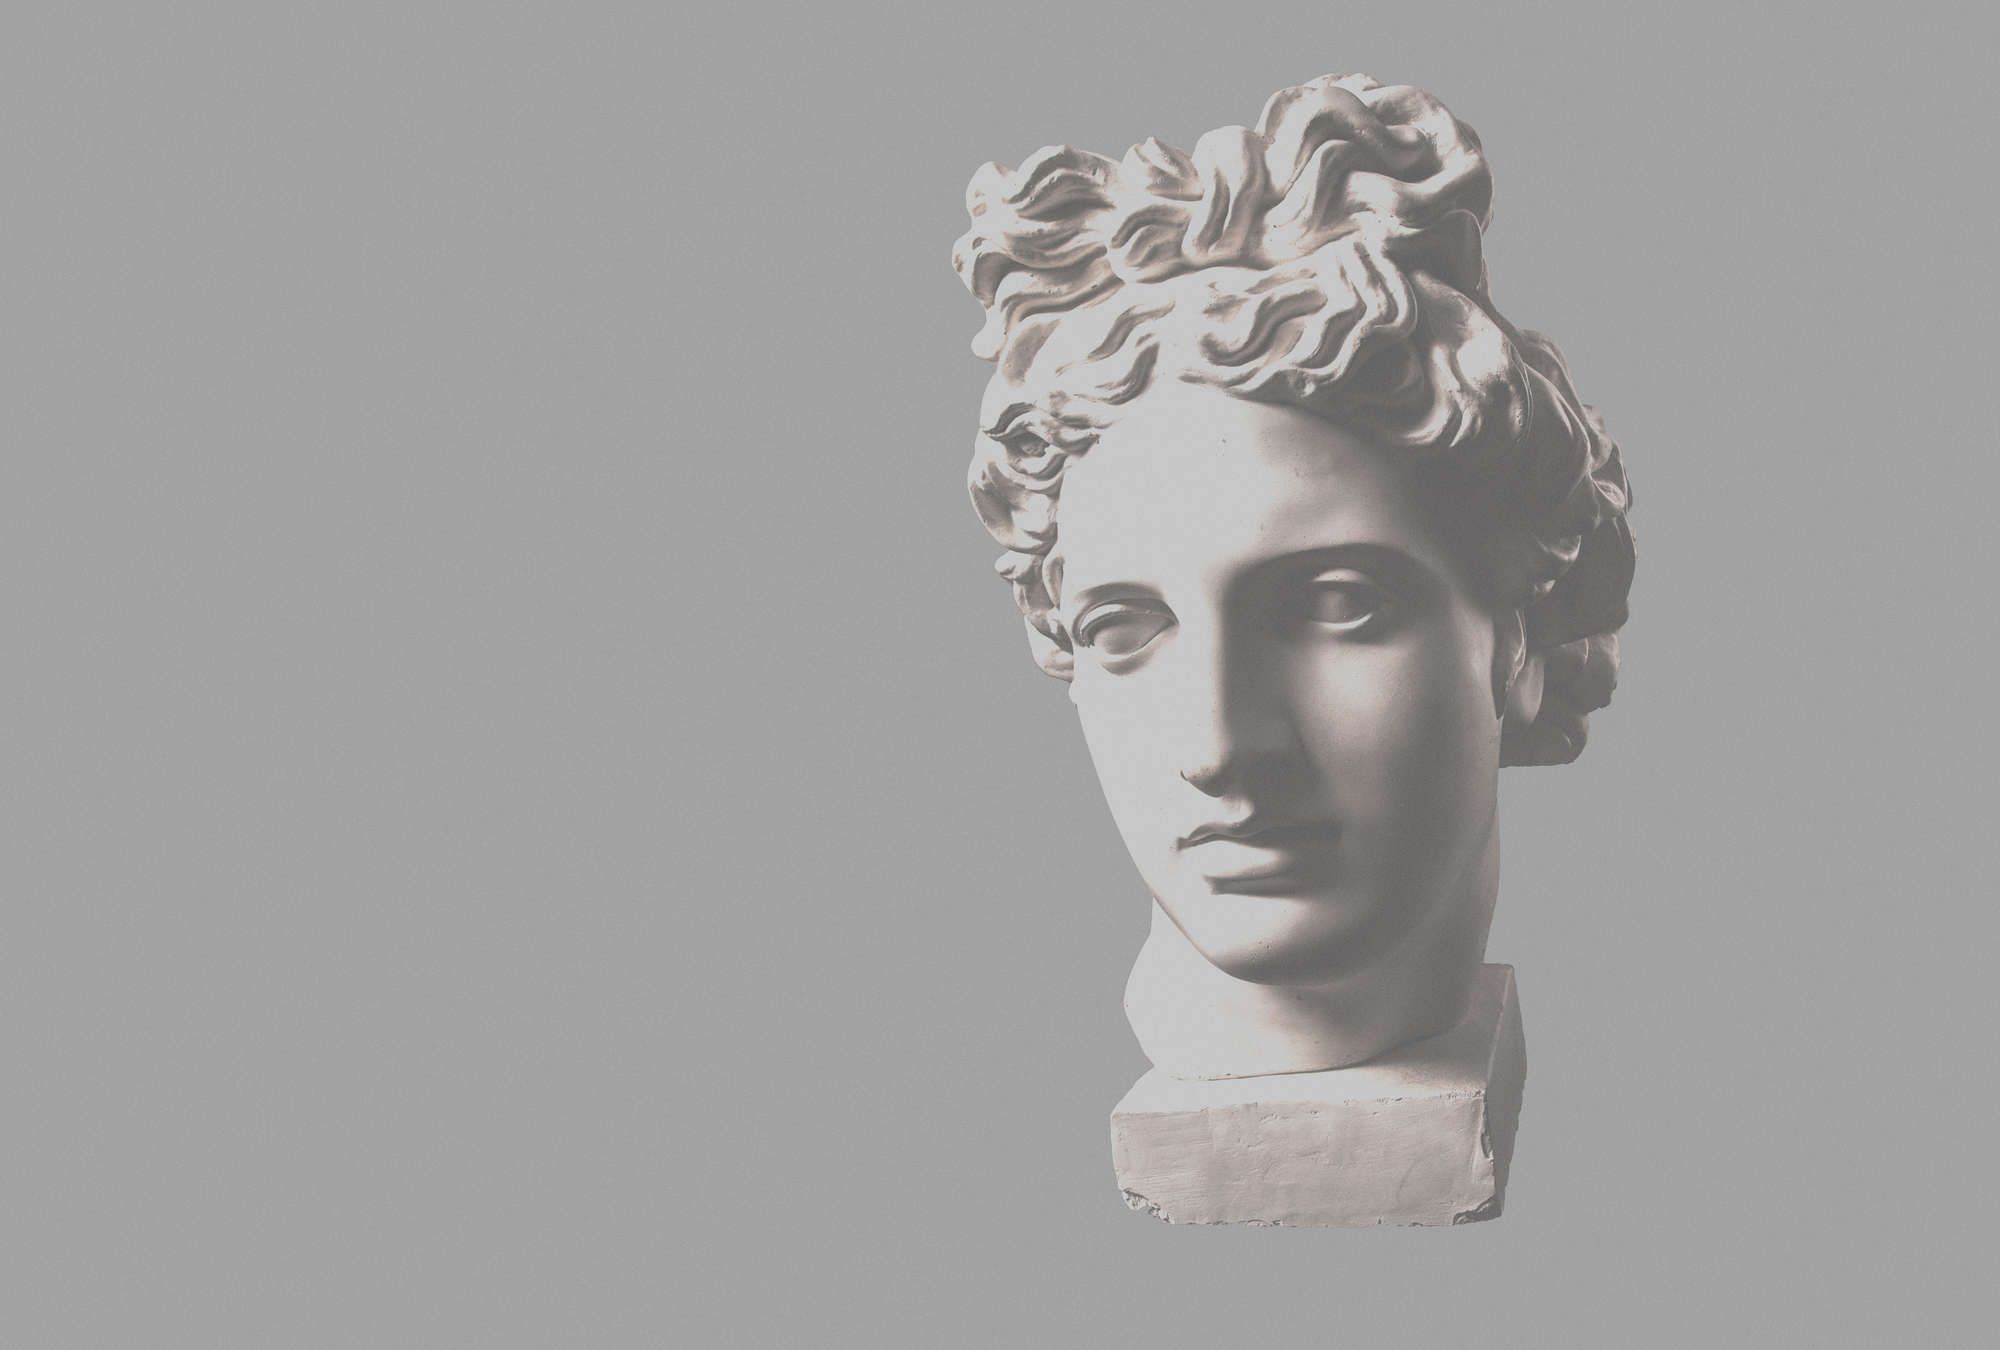             Fotomurali »venus« - busto femminile antico - Materiali non tessuto liscio, leggermente perlato e scintillante
        